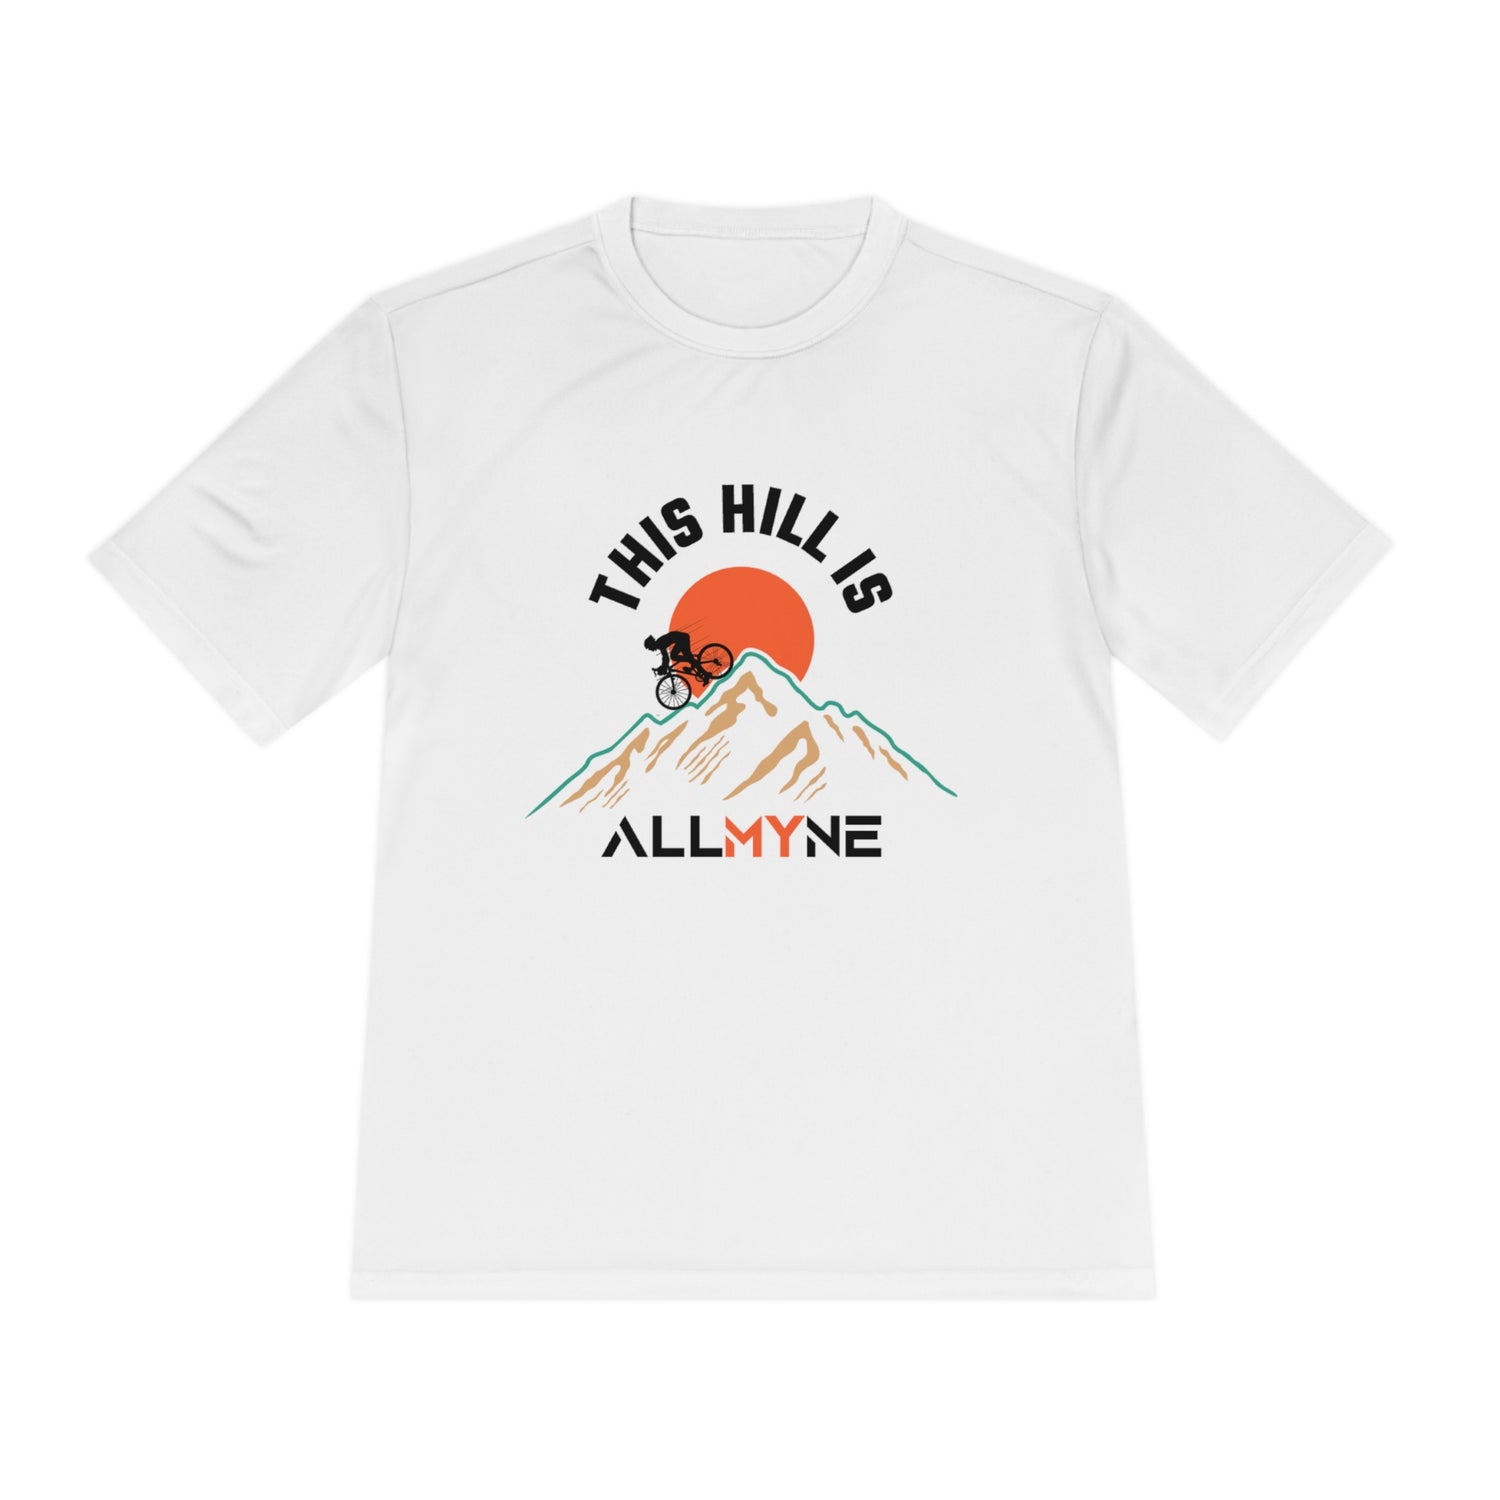 Cette colline est un t-shirt de performance classique ALLMYNE